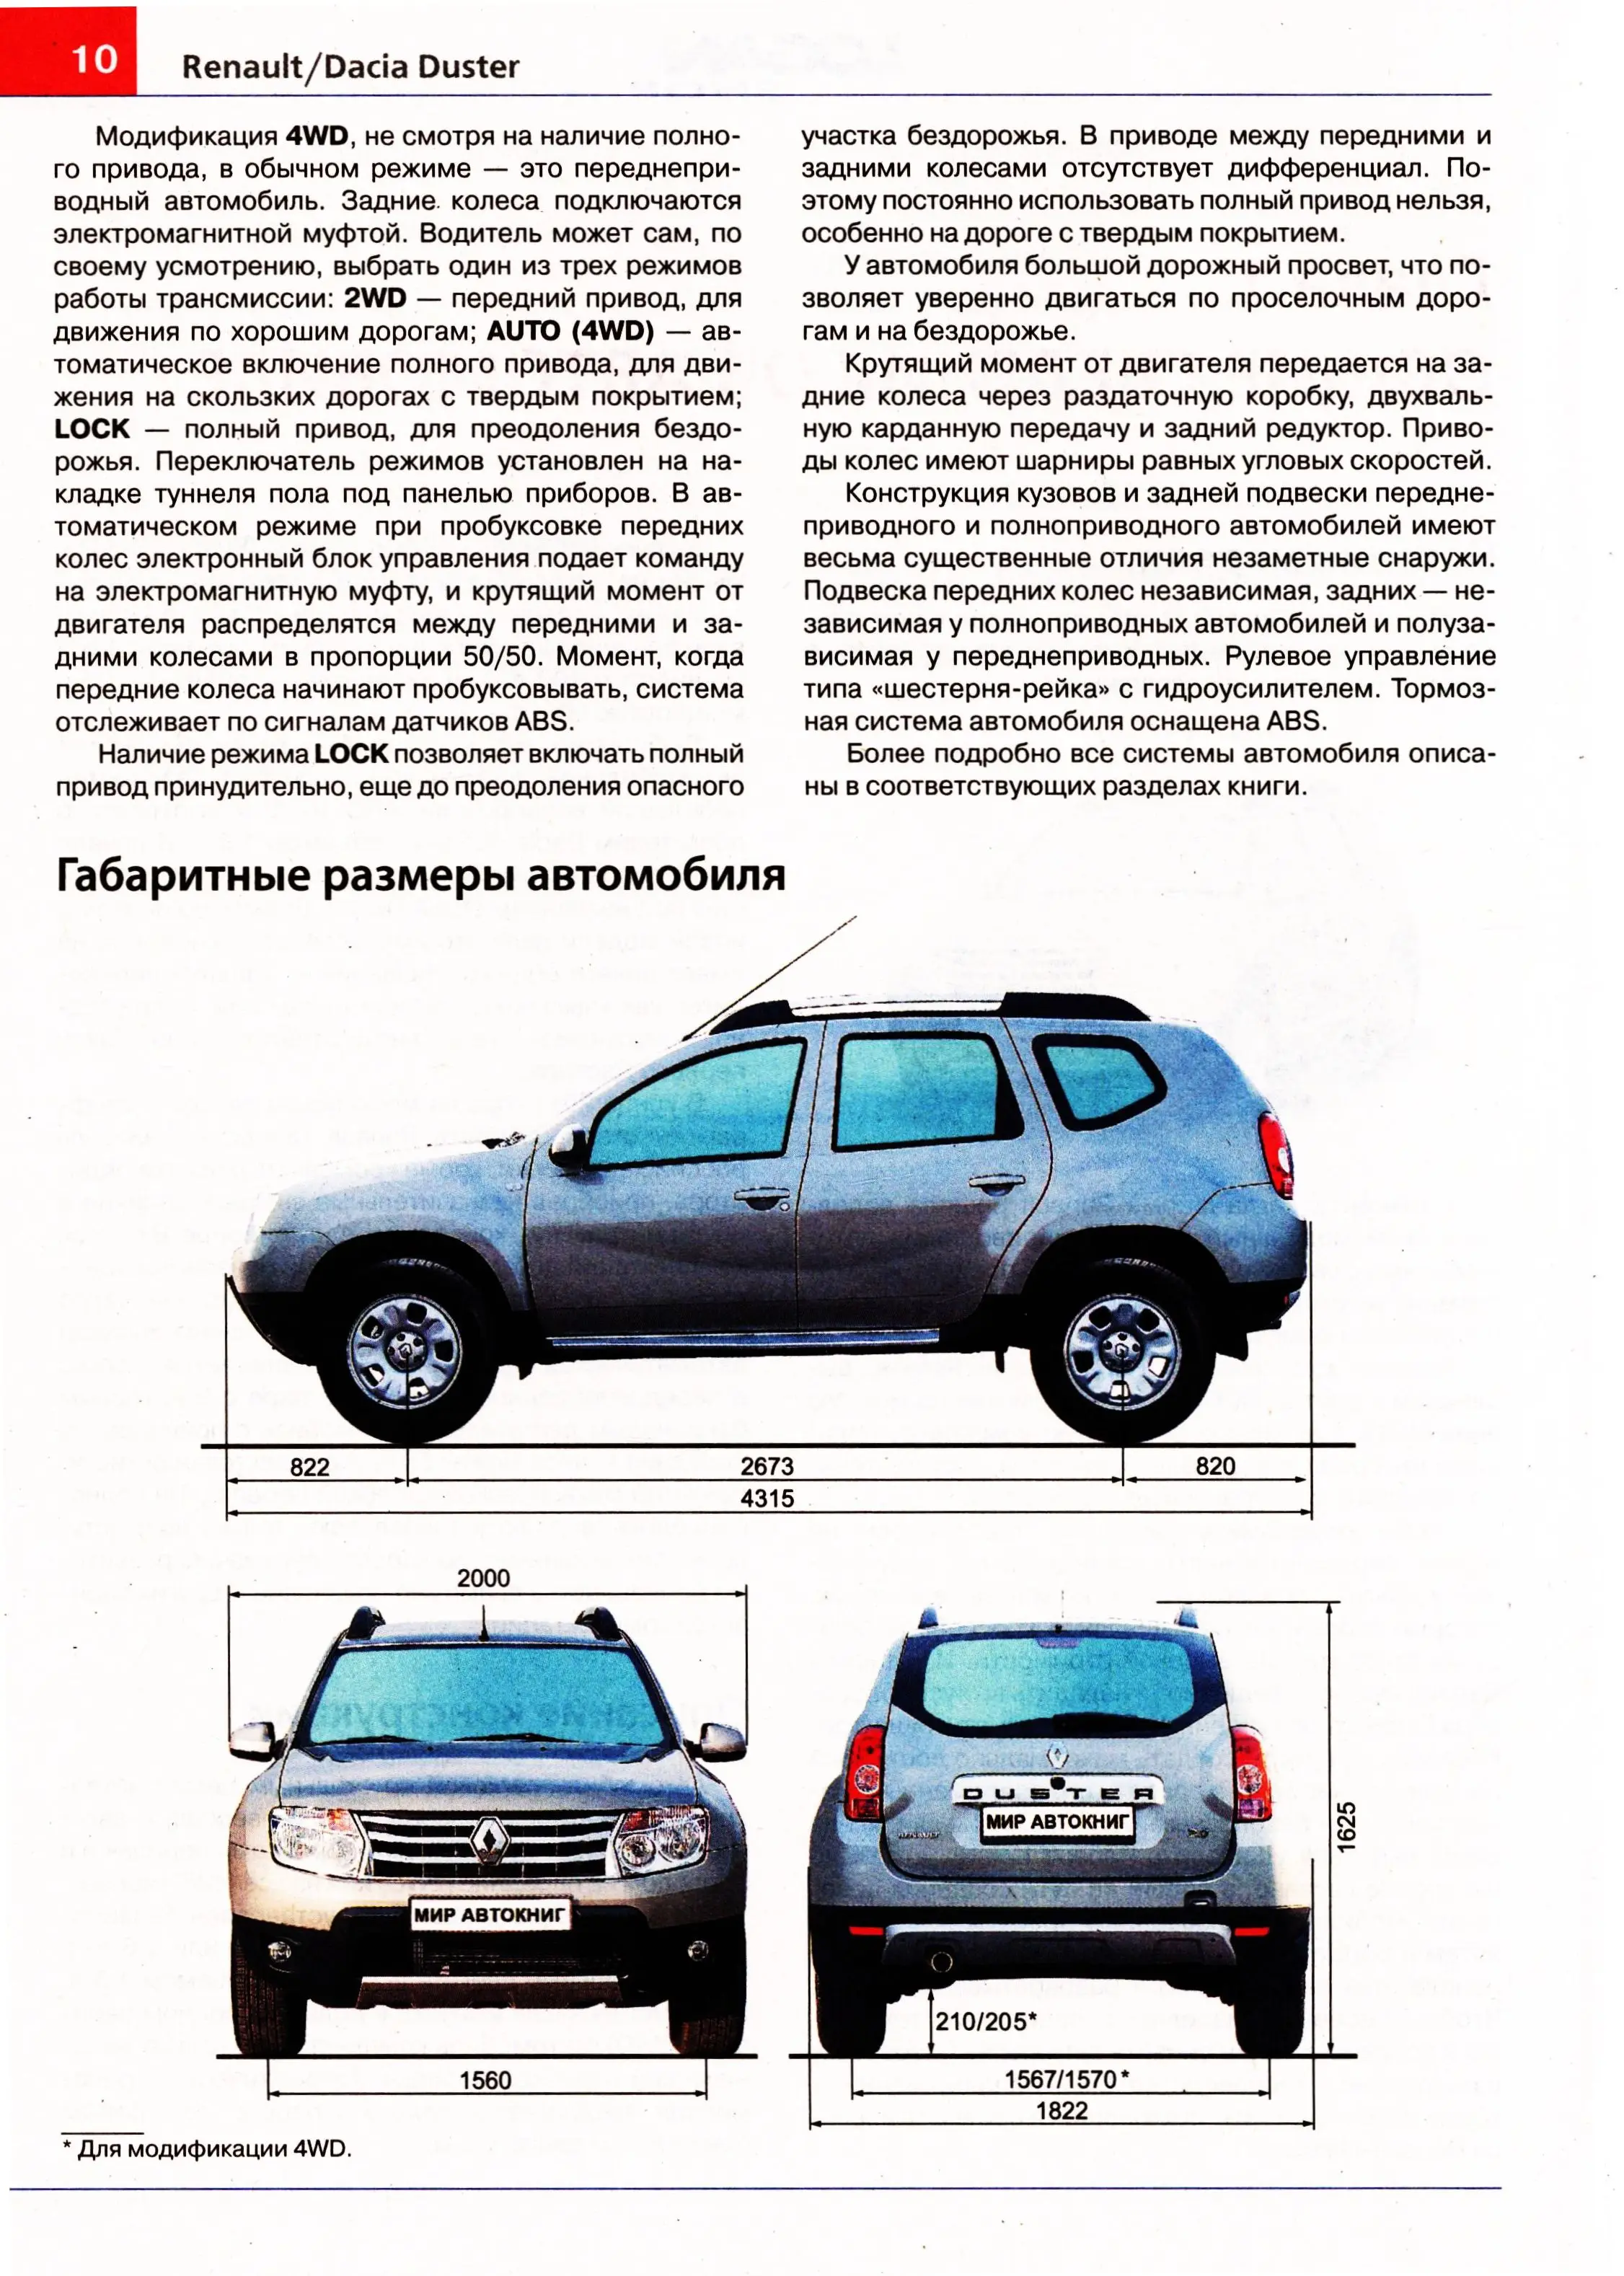 Какие модели автомобилей выпускают под брендом «Москвич»